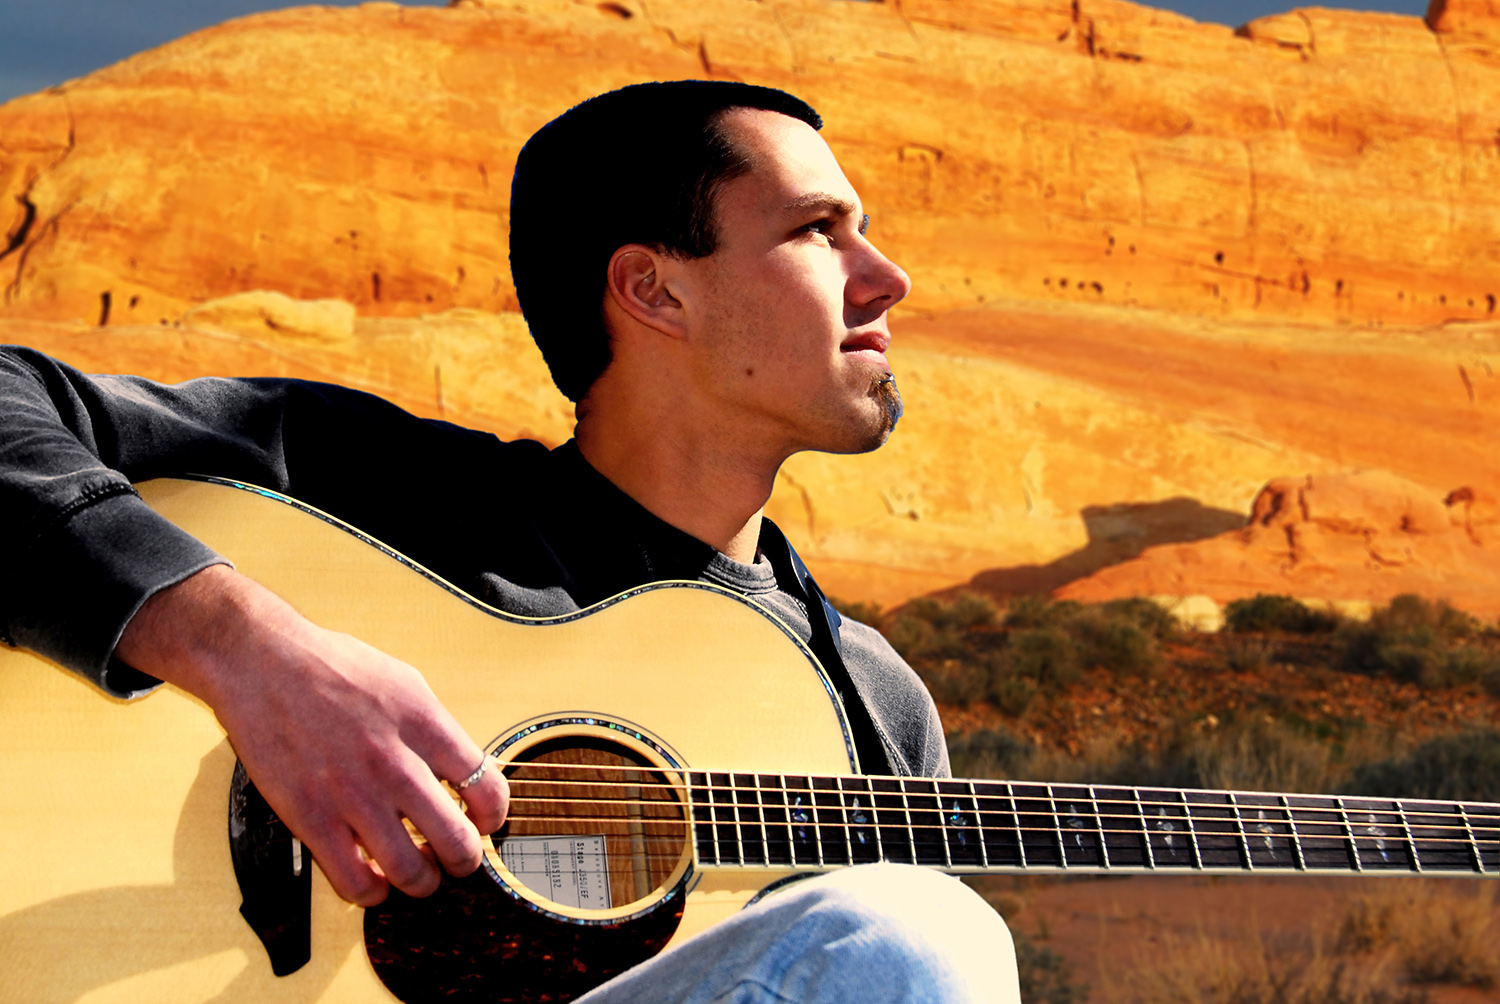 Guitar_Player_Singer_Music_Southwest_Nevada.jpg